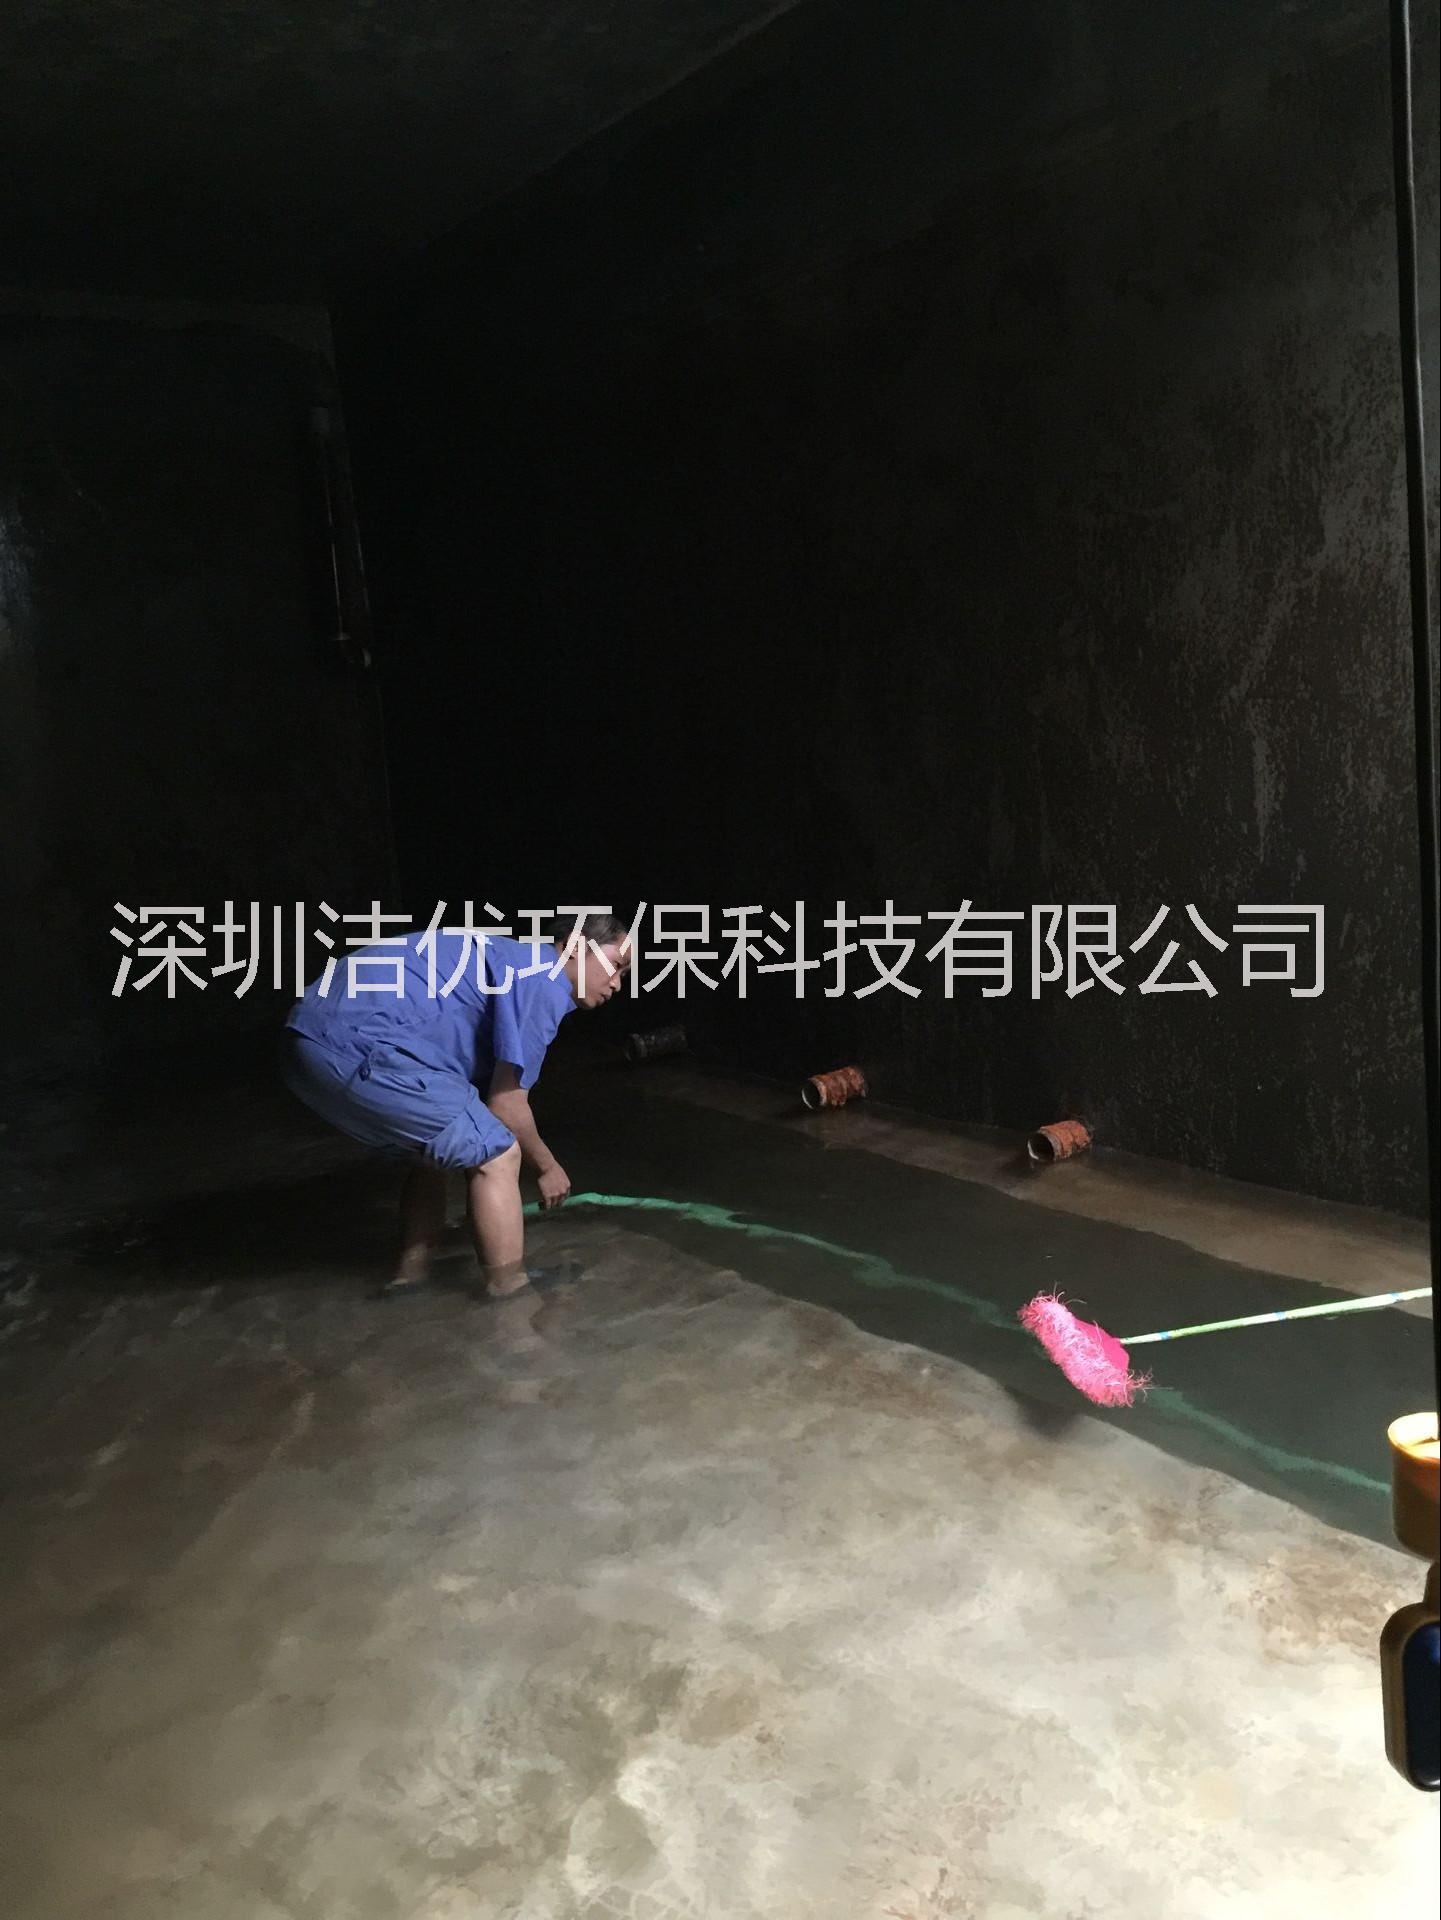 深圳地毯清洗公司